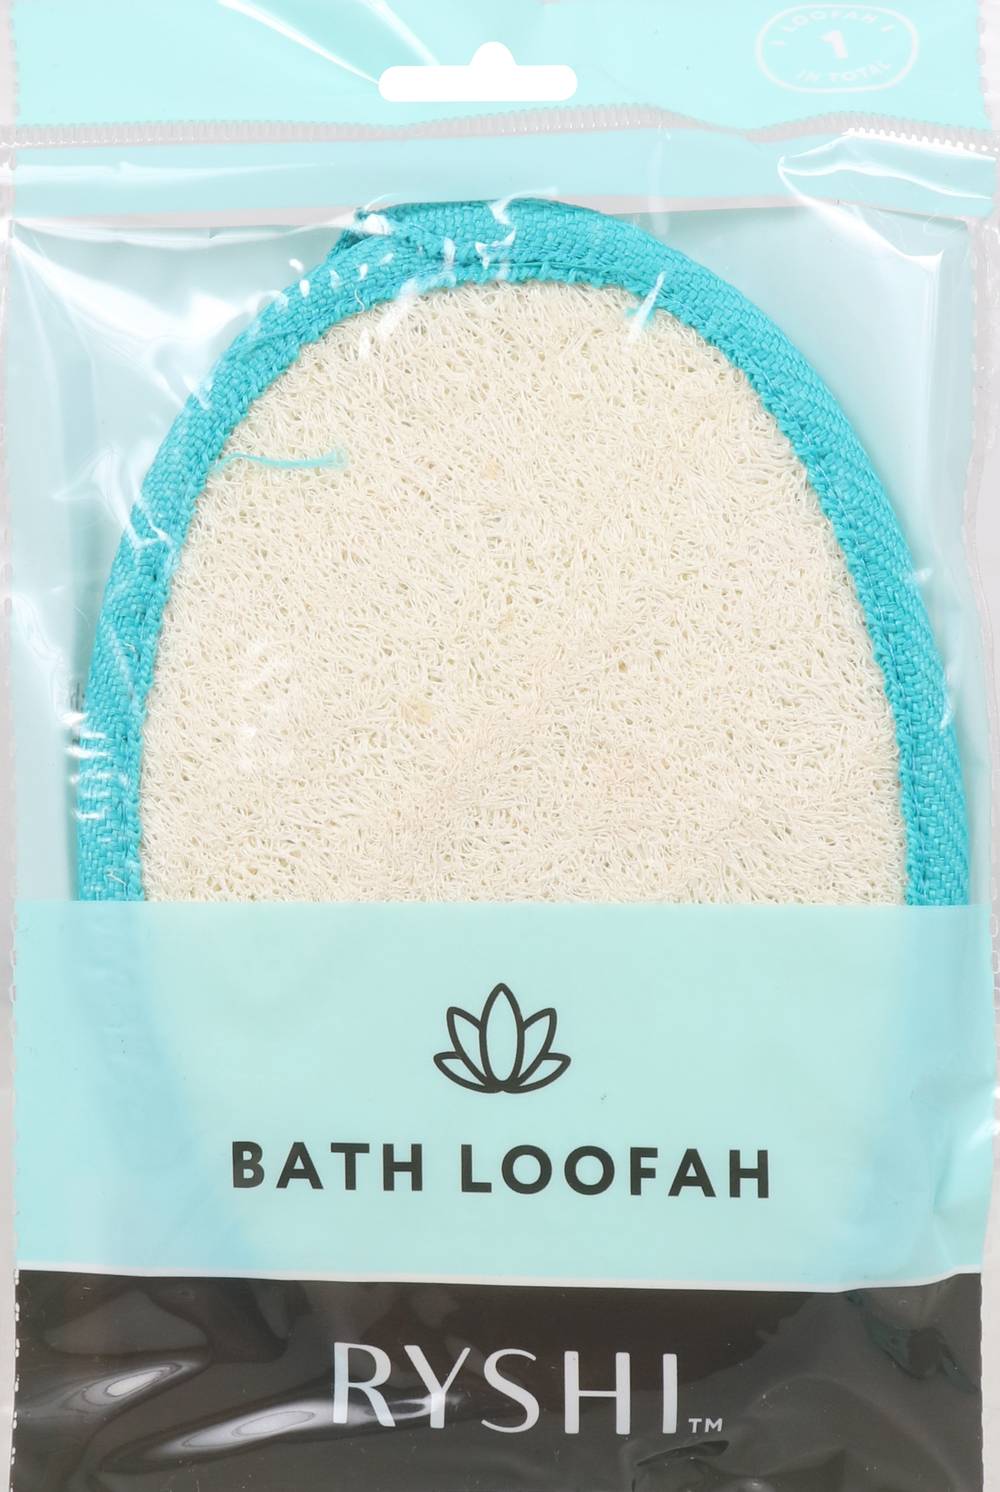 Ryshi Bath Loofah With Strap